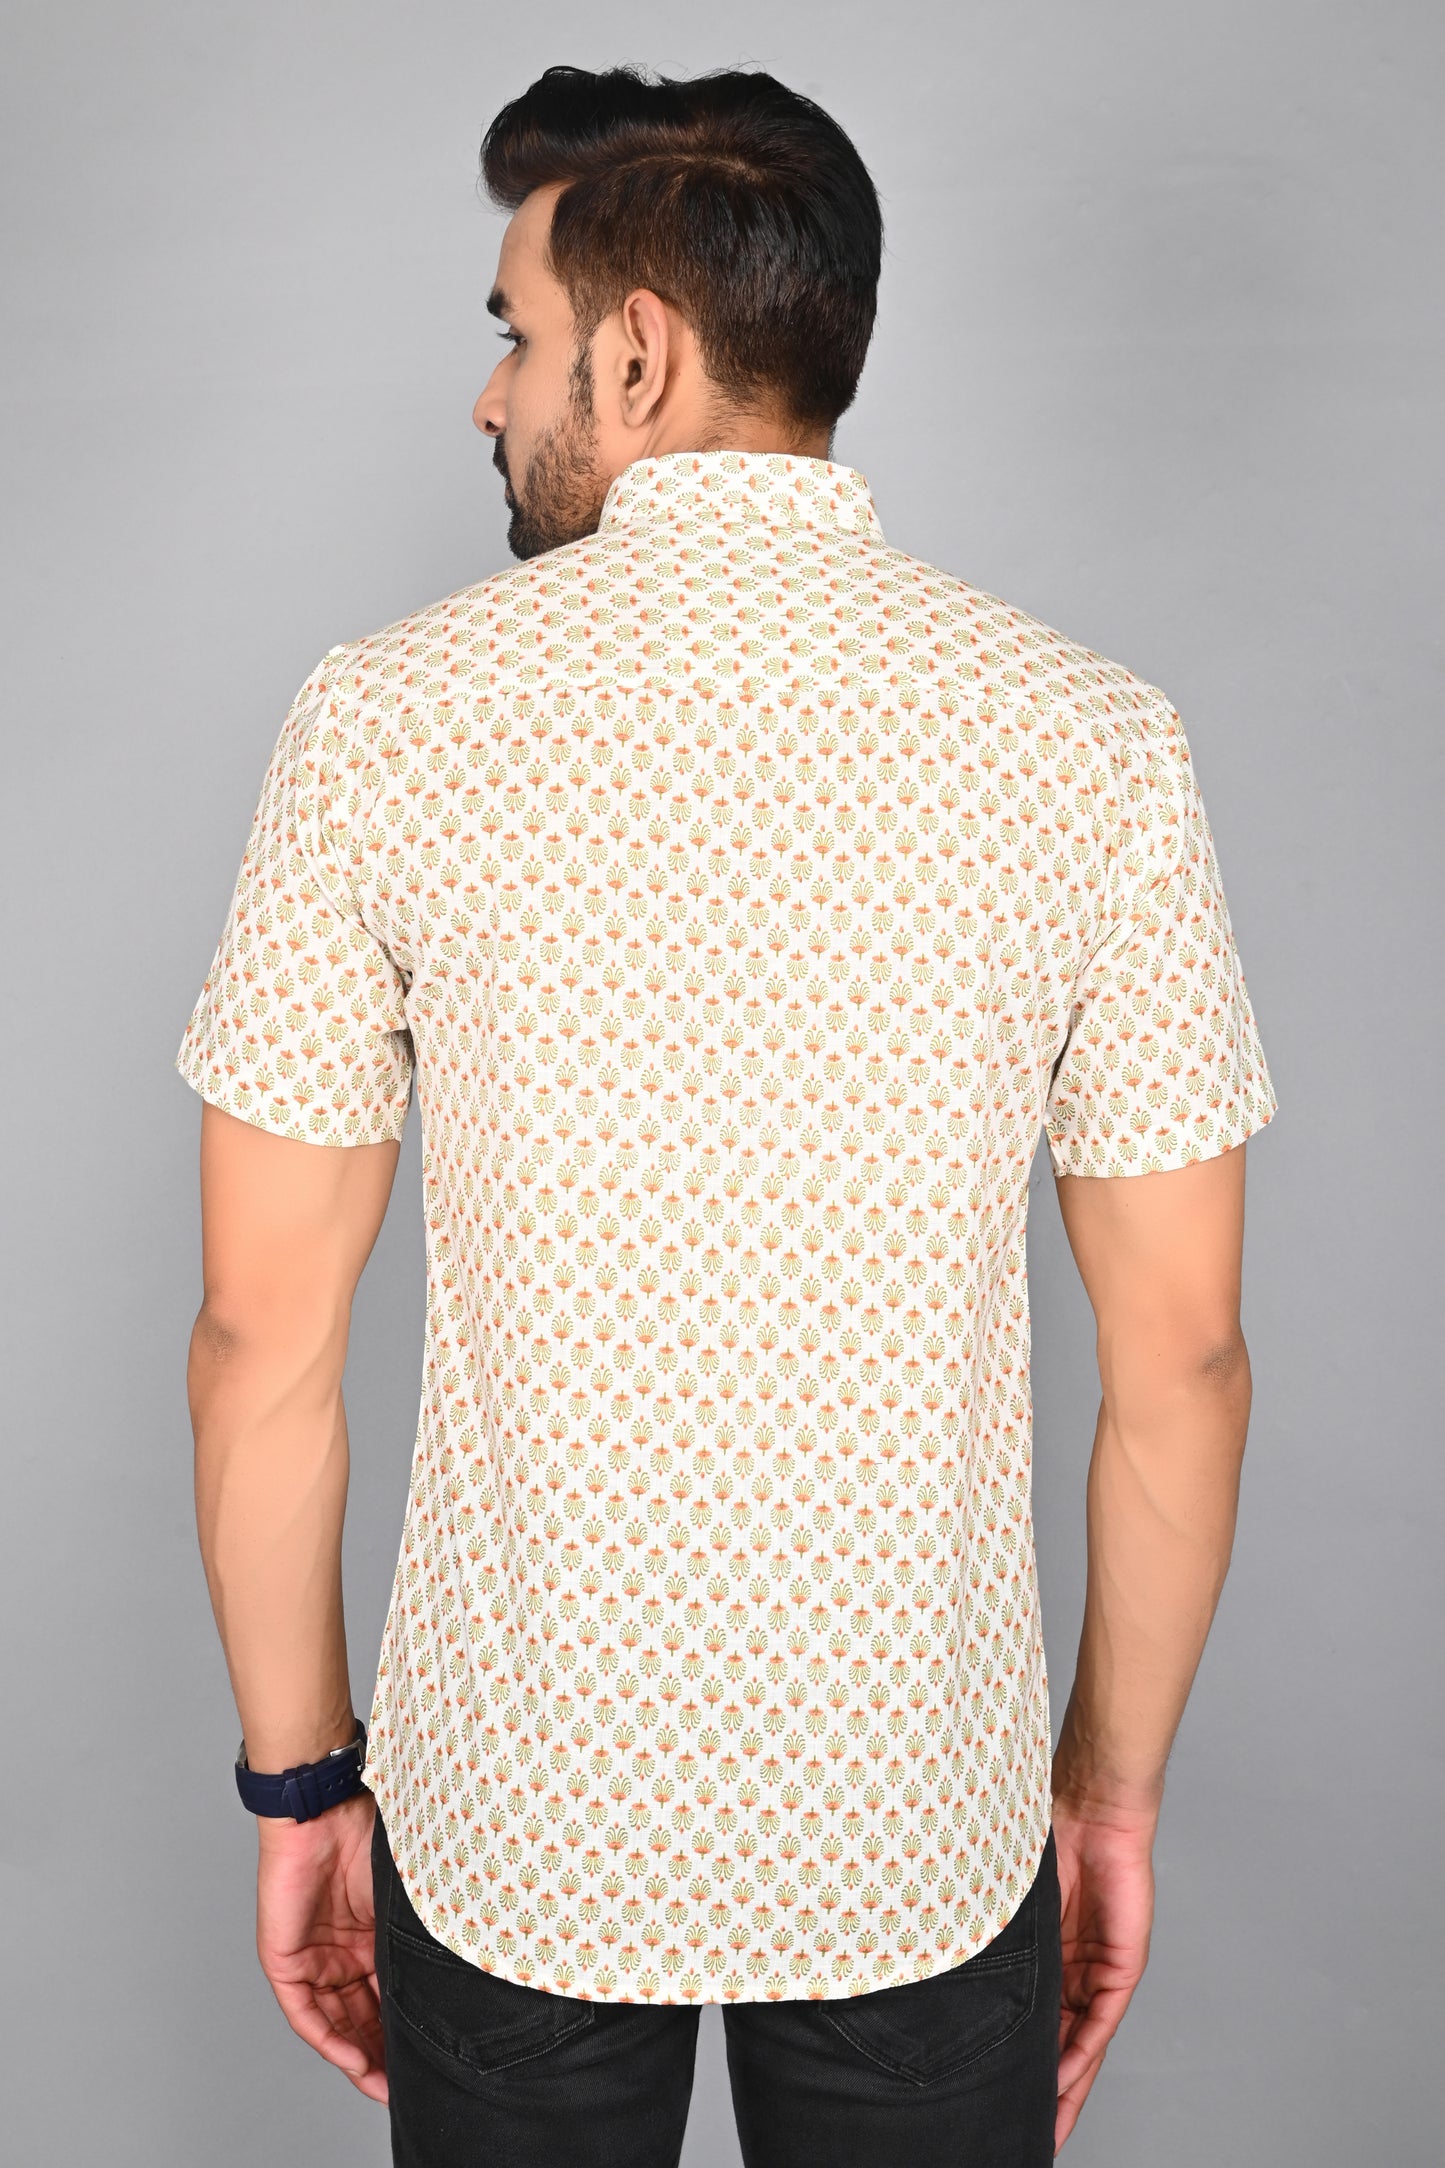 Men's Printed Buti Half-Sleeves shirts